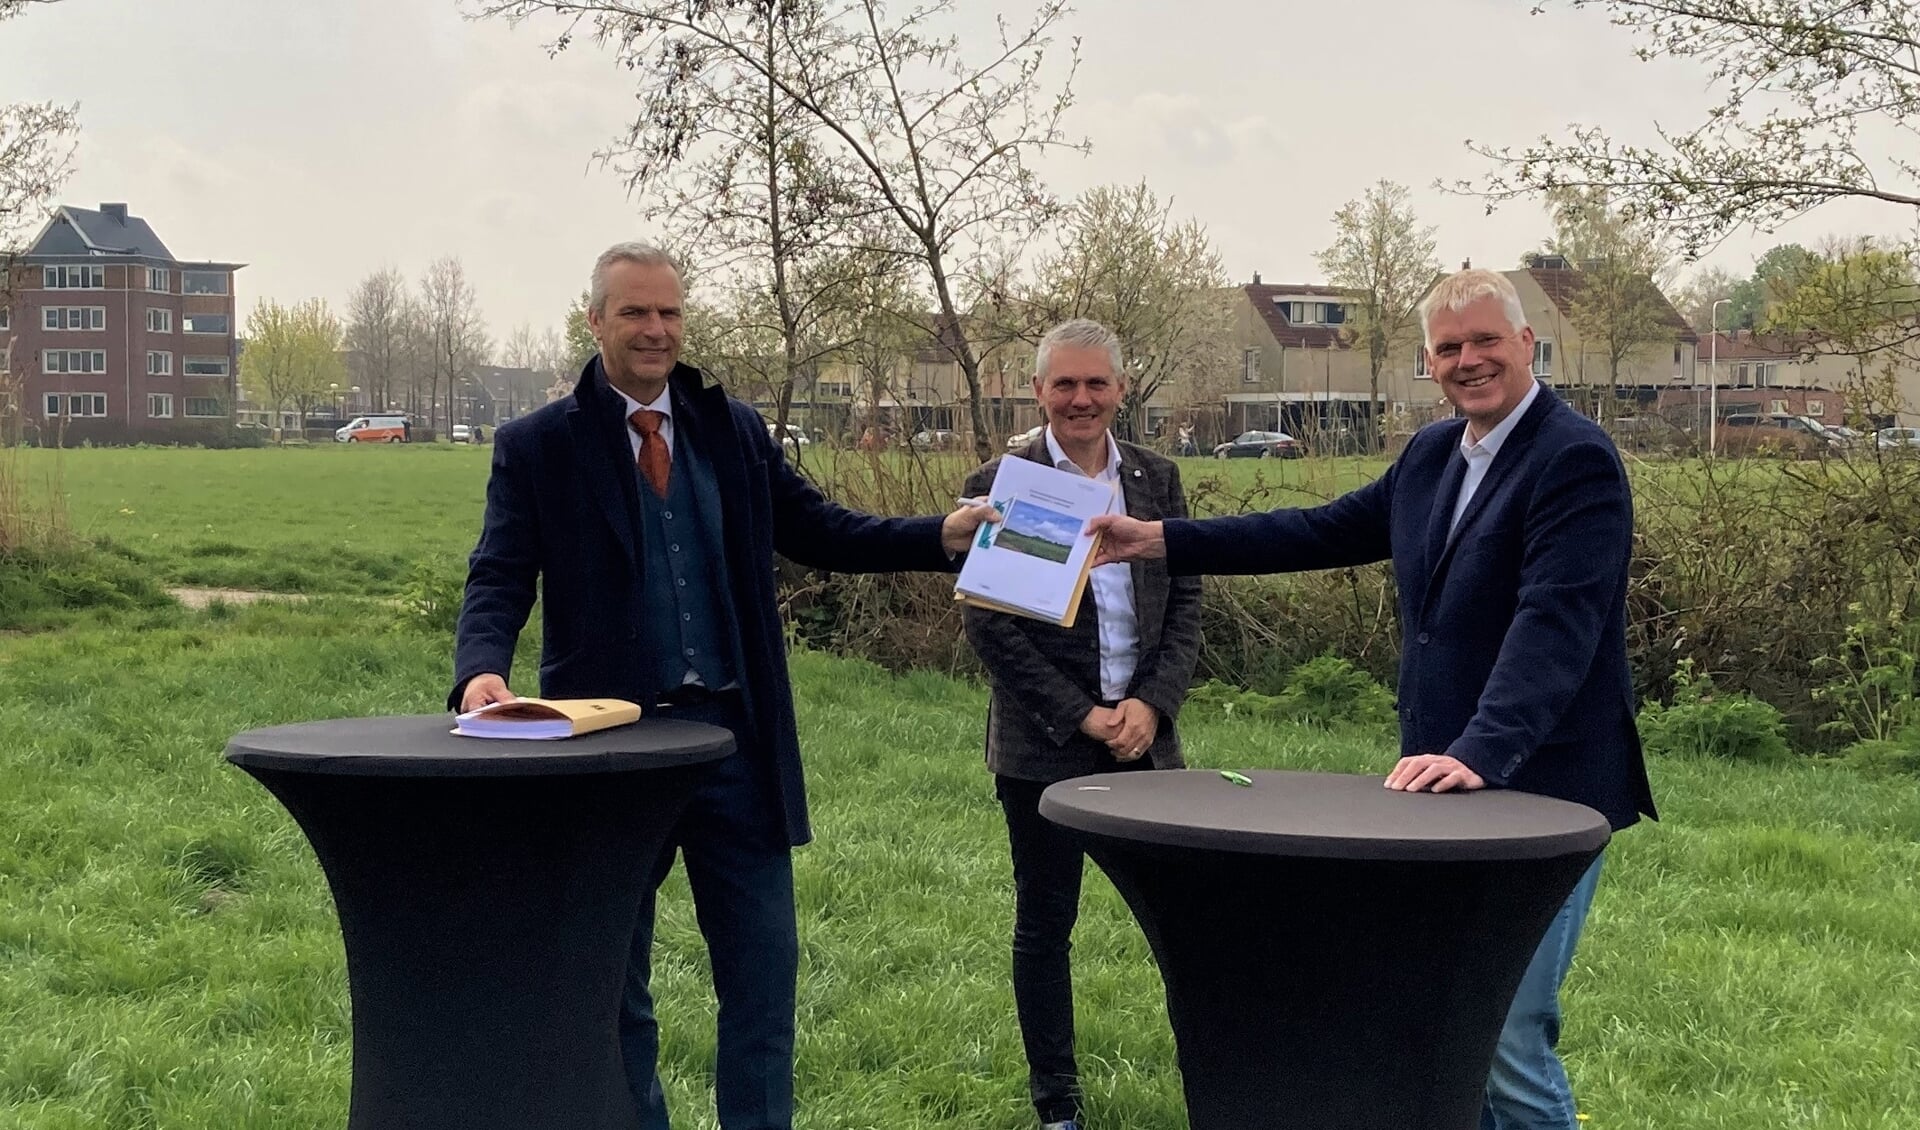 Wethouder Wim Vos, Ard de Jong (Latei) en Jan van Barneveld (Alliantie Ontwikkeling) zetten vanmorgen hun handtekening onder een overeenkomst voor de ontwikkeling van Mastenbroek2 in Achterveld.